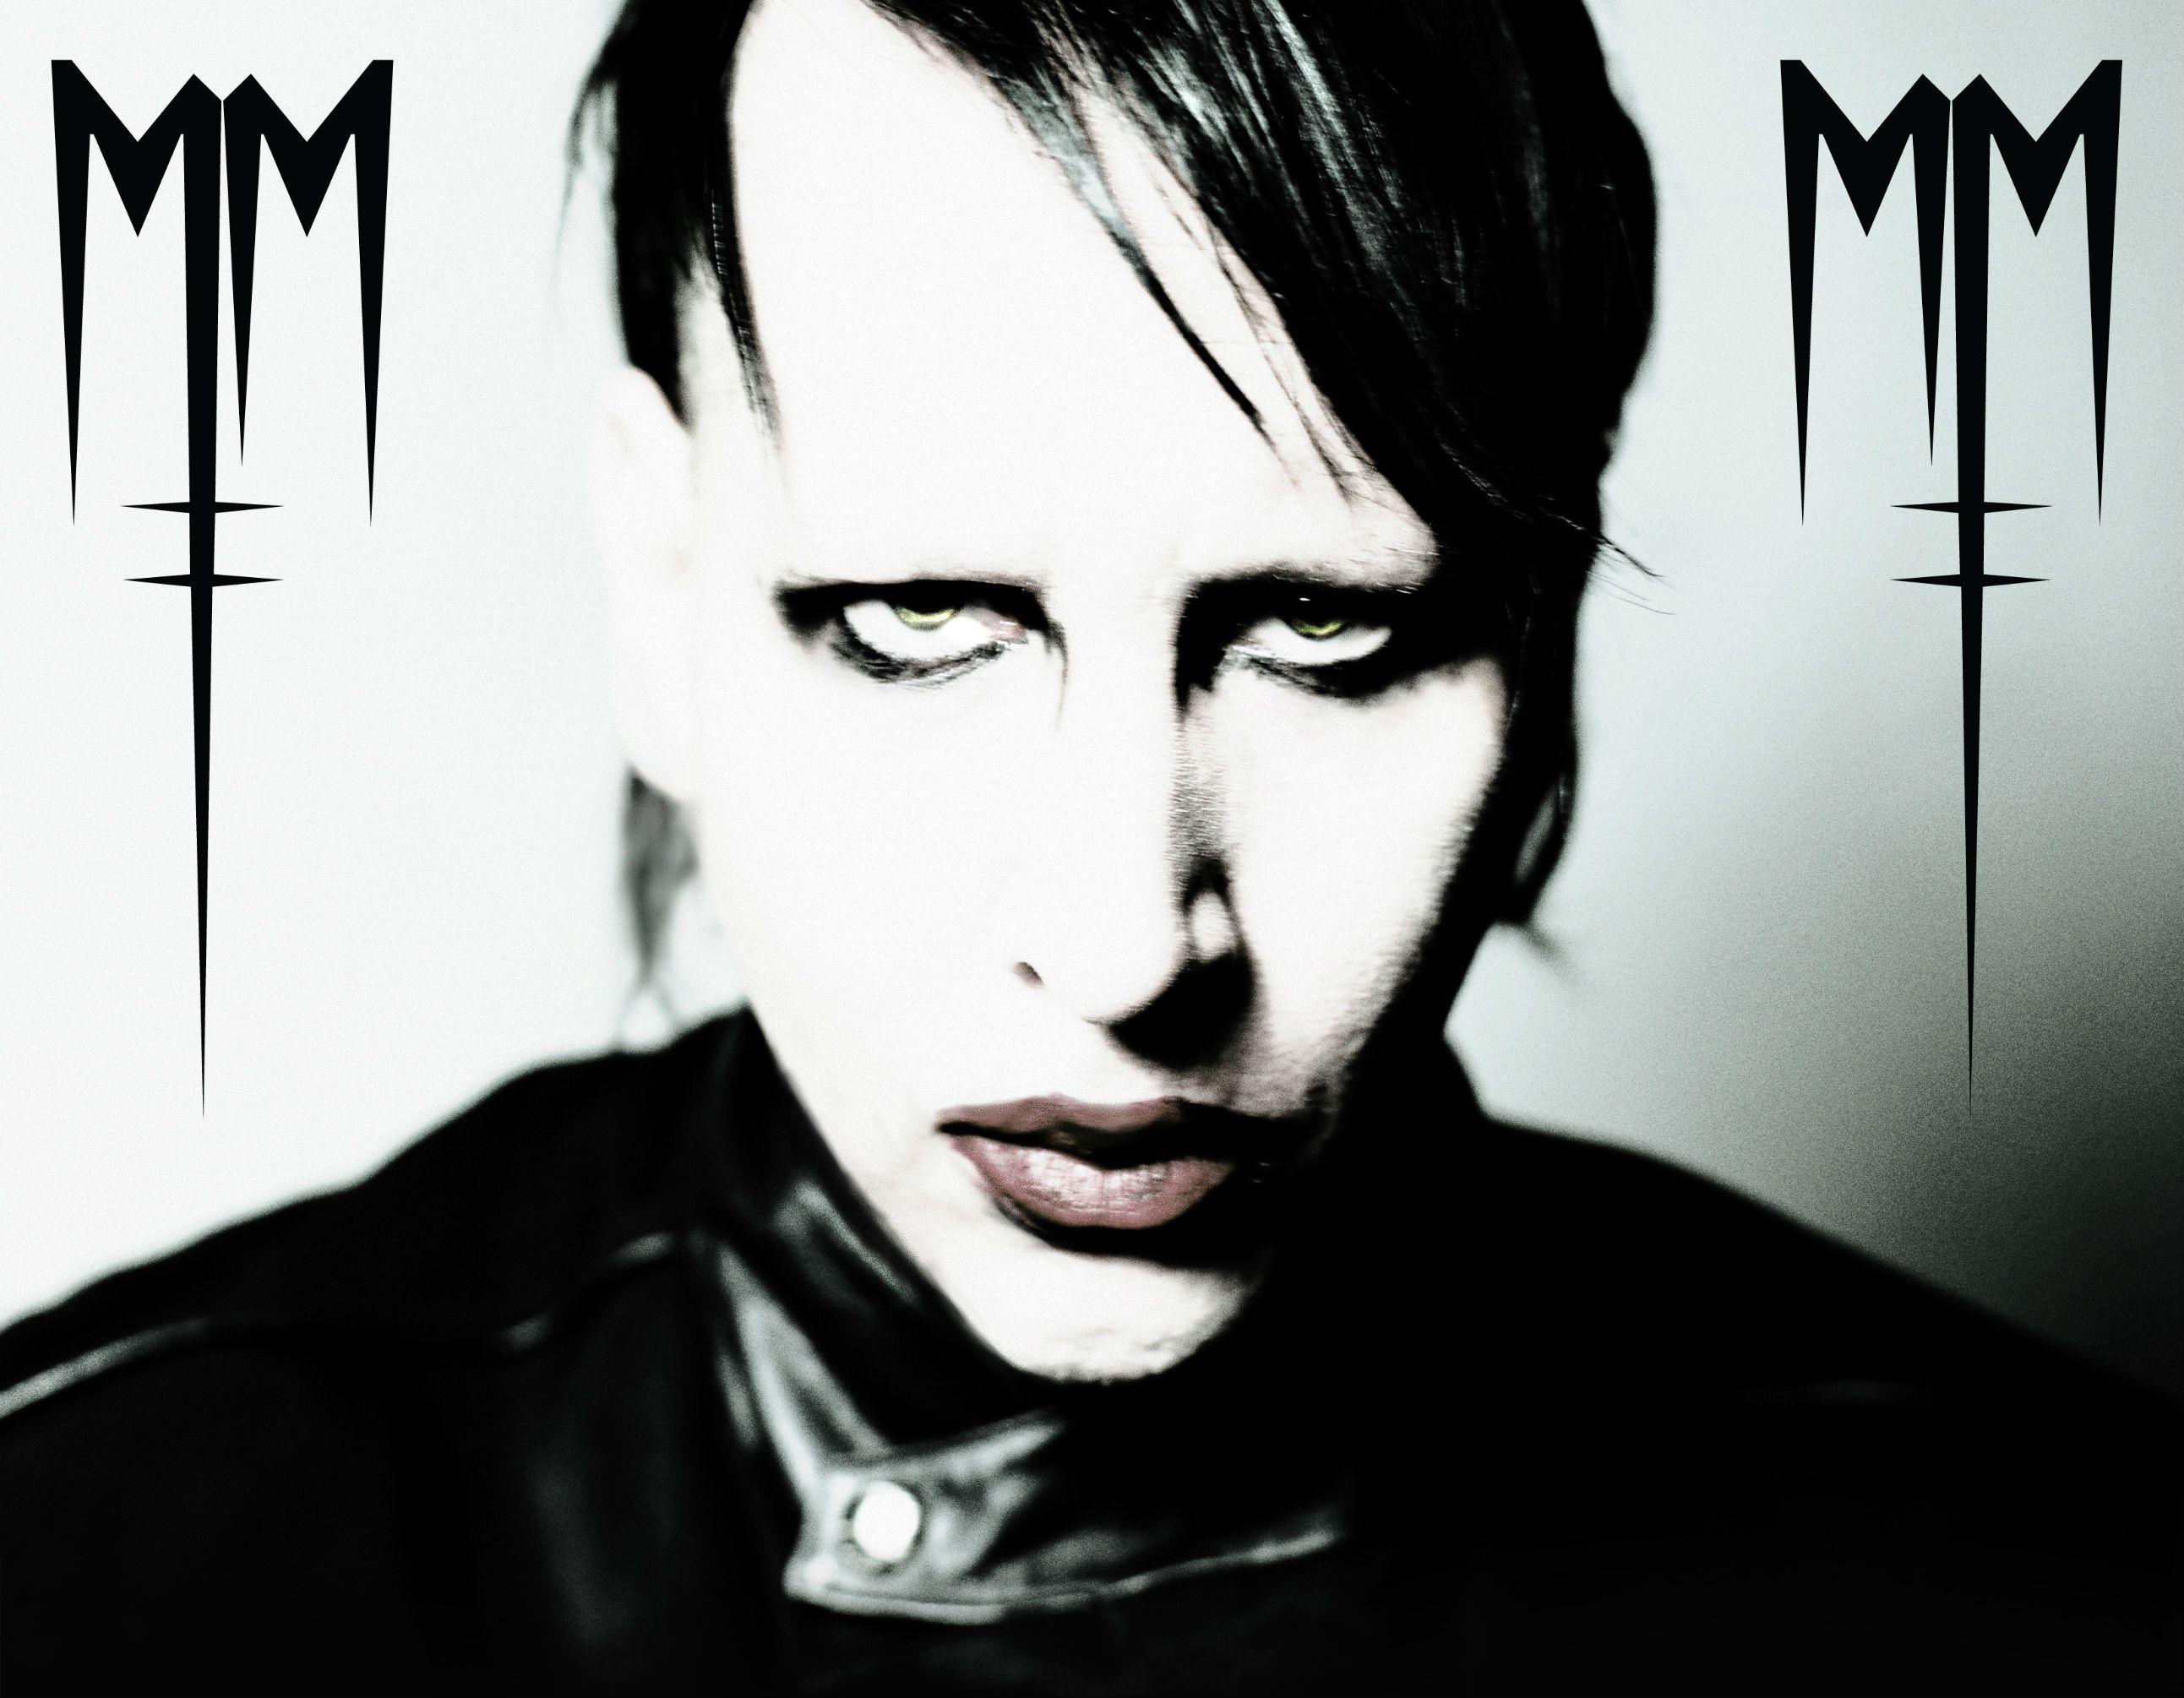 Marilyn Manson Wallpaper. Image Wallpaper